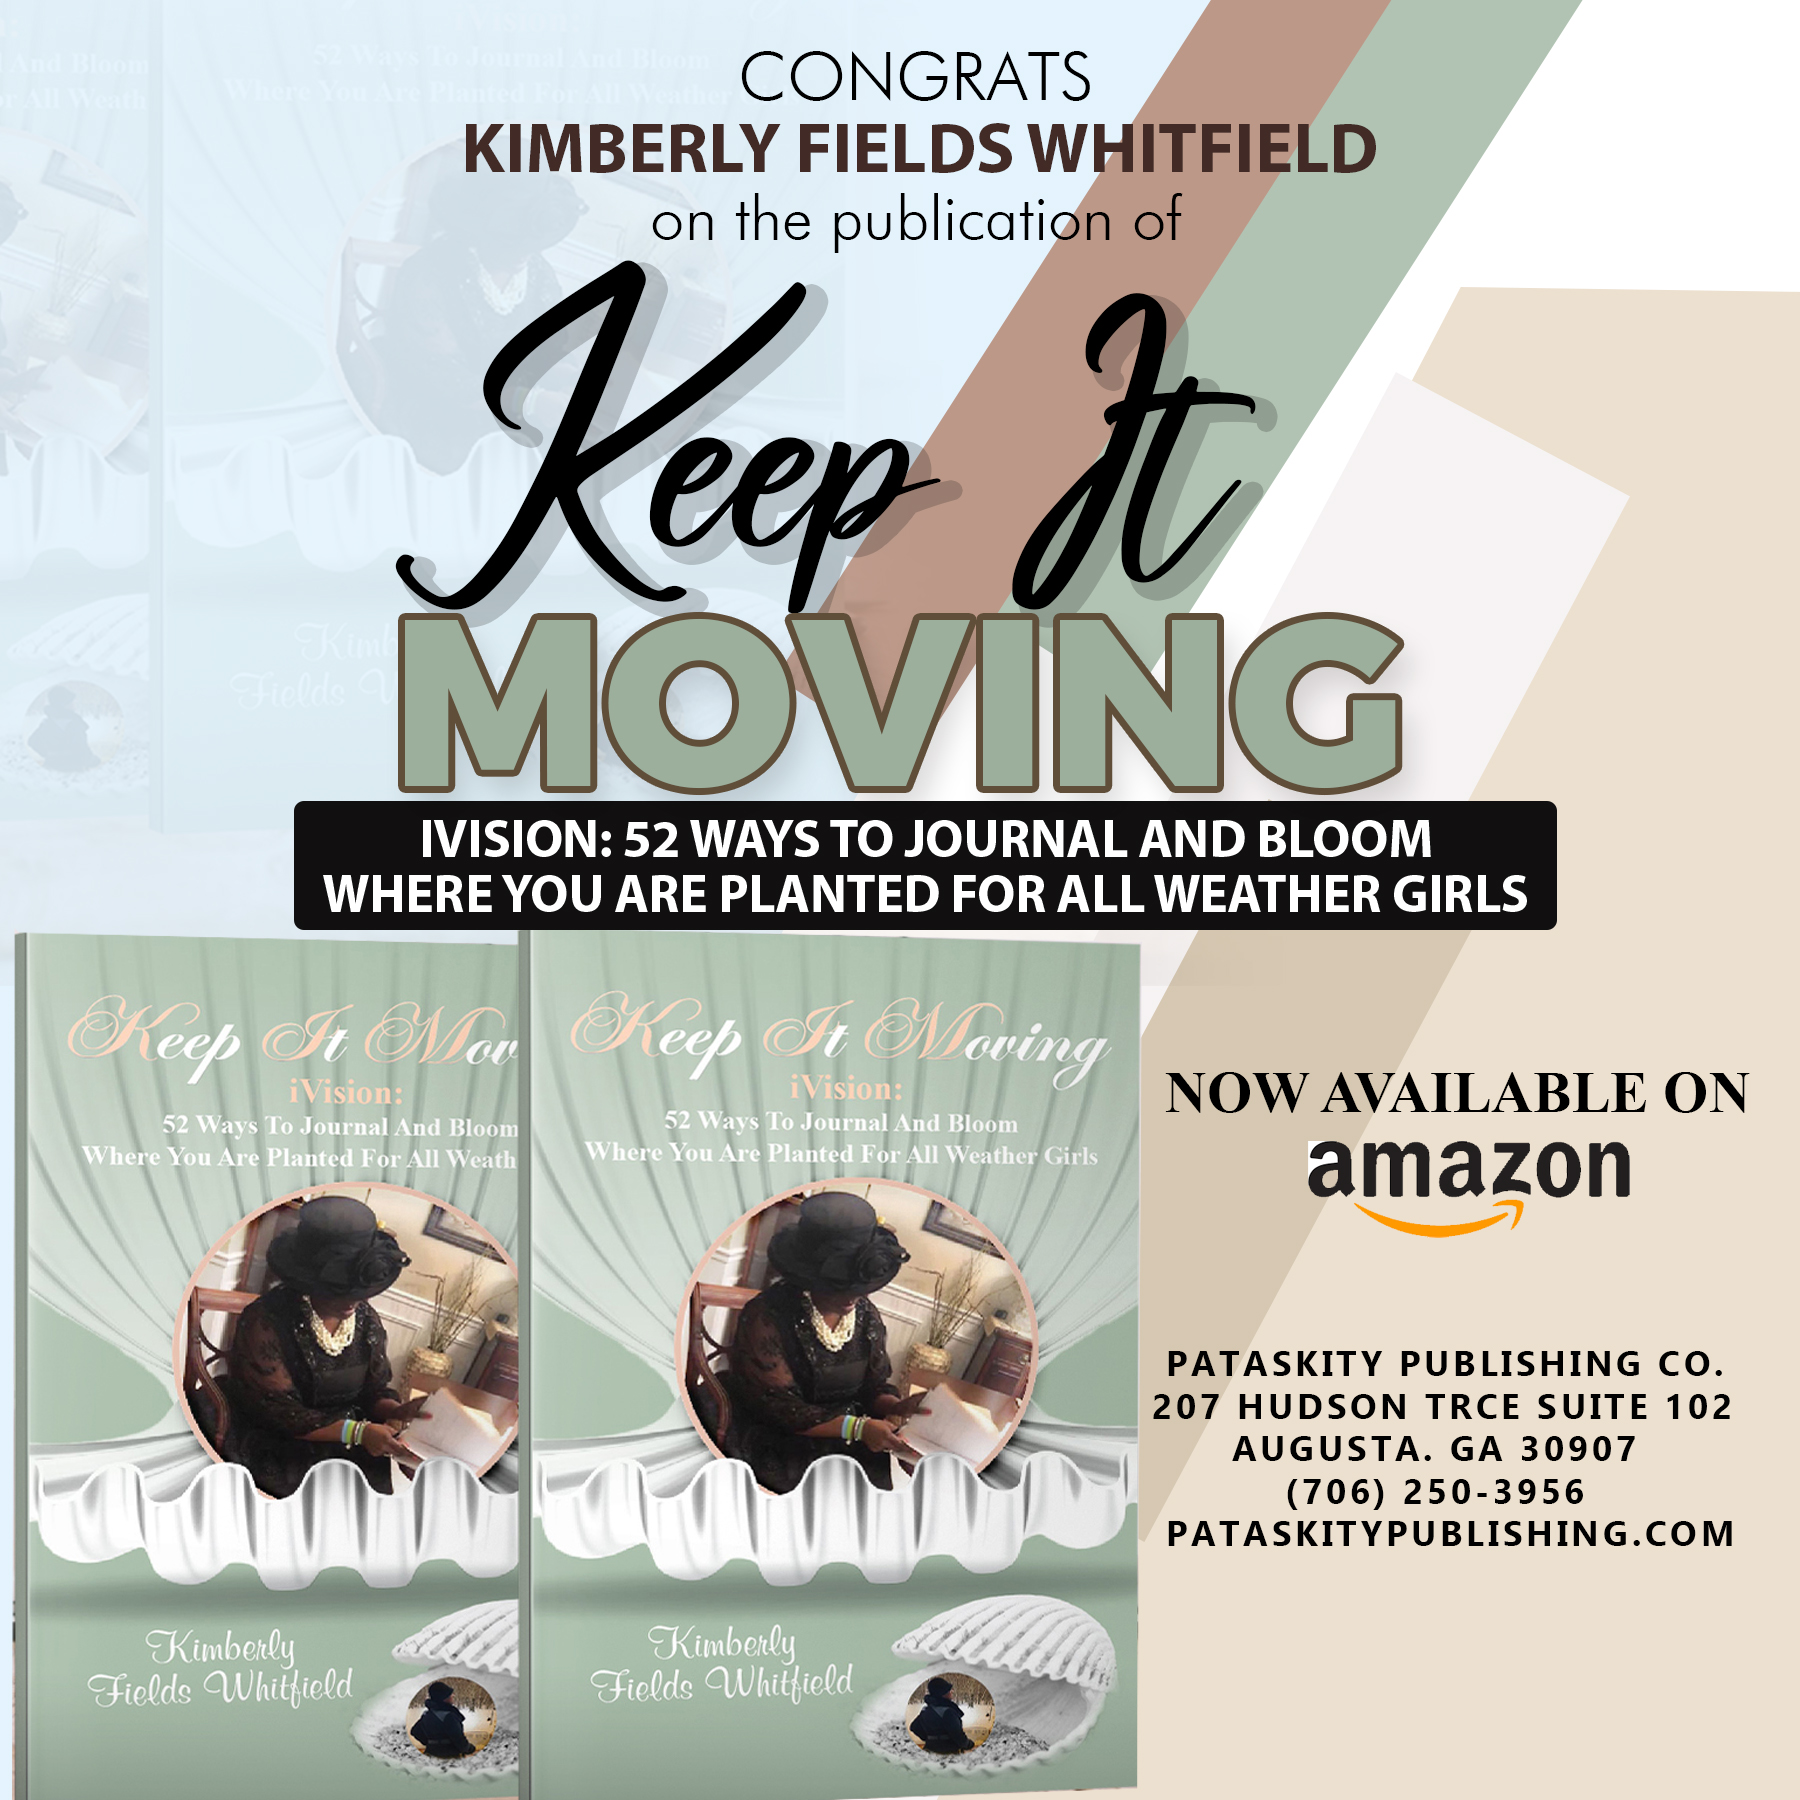  Pataskity Publishing Company celebrates Kimberly Fields Whitfield!